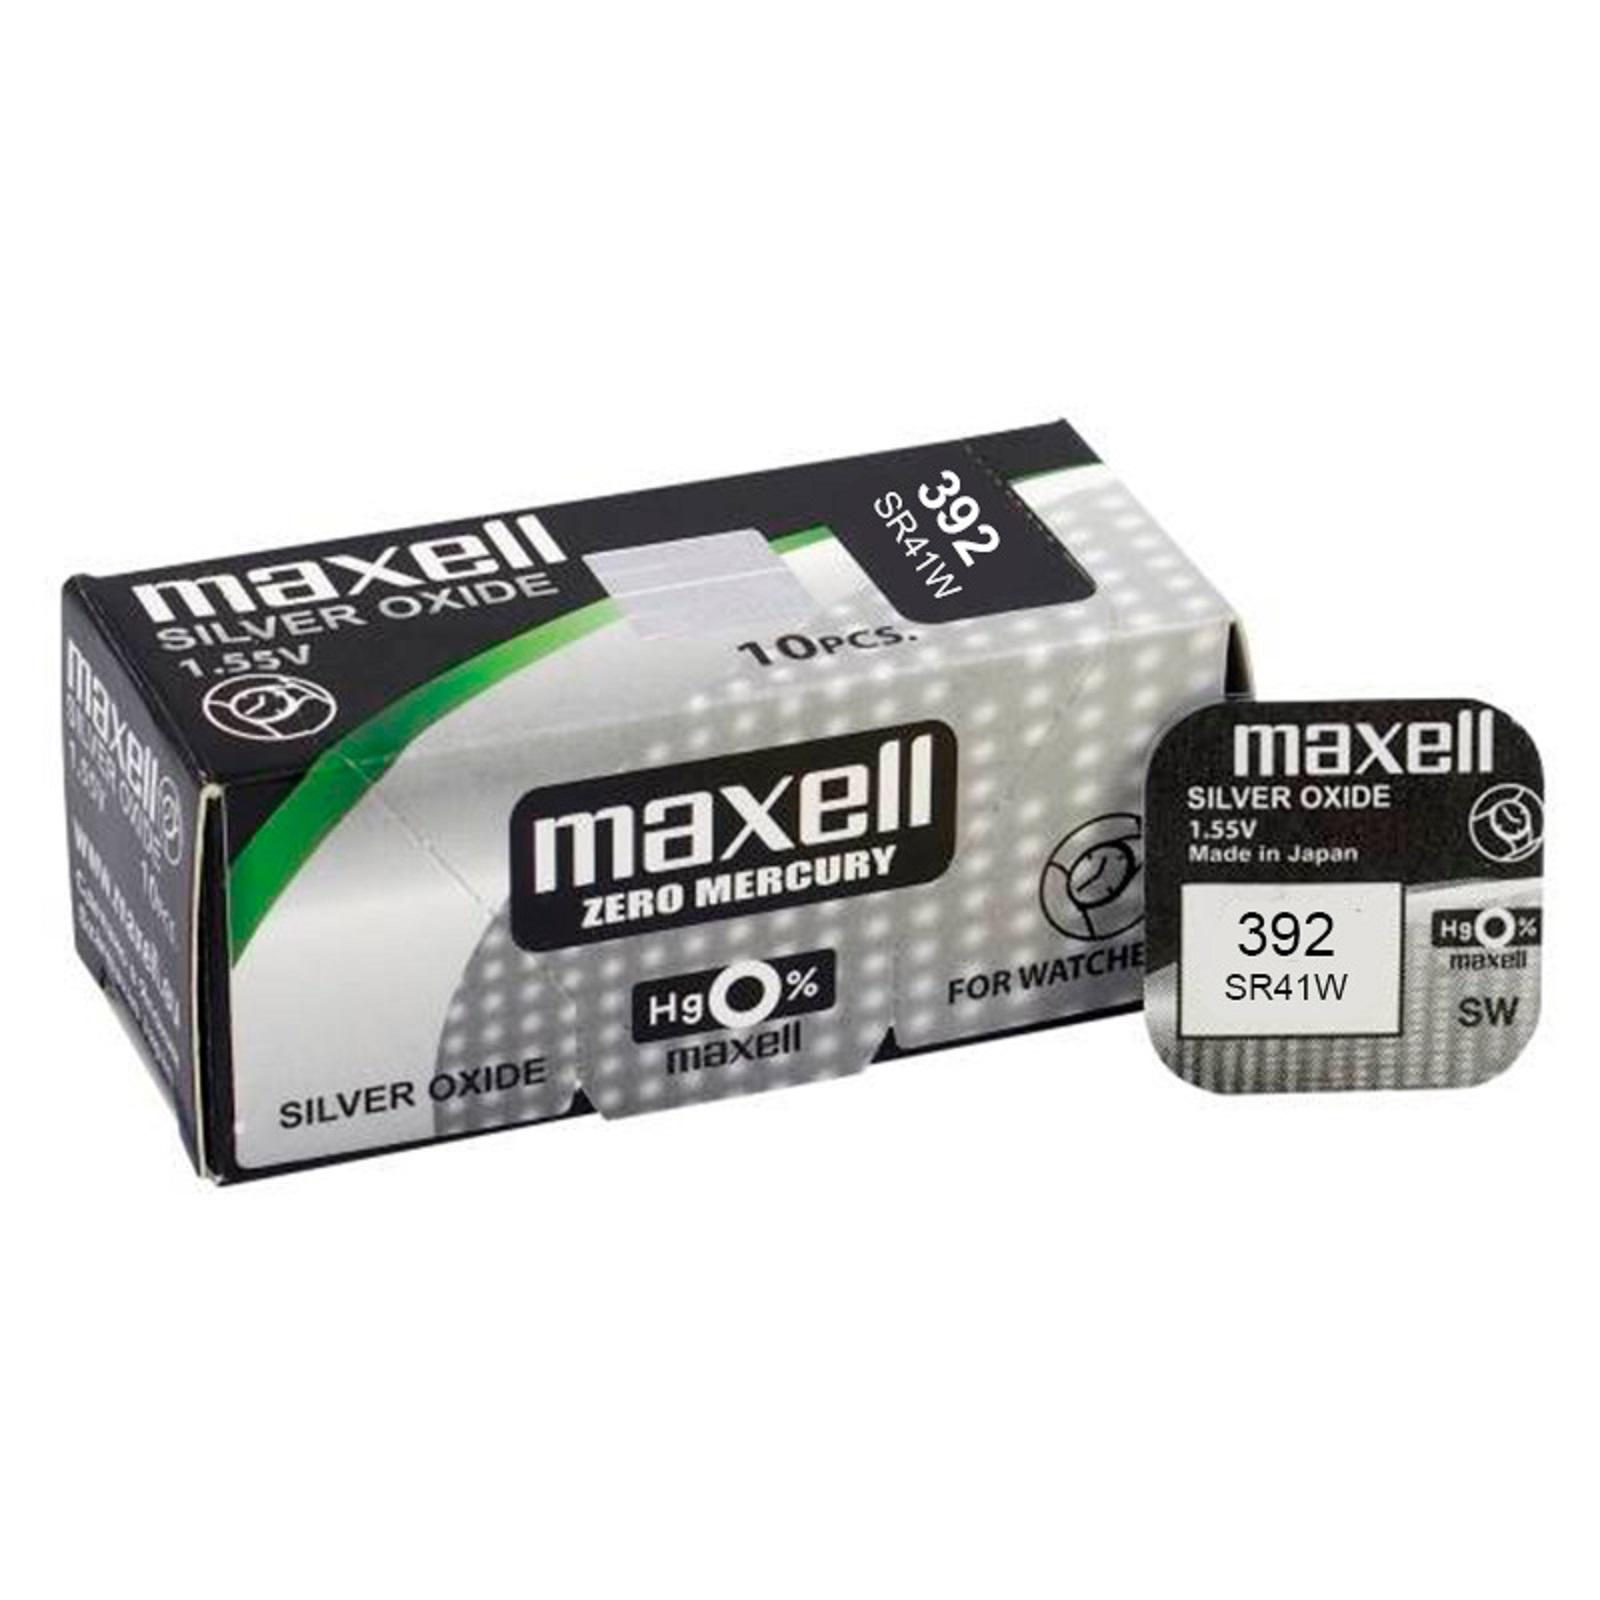 Maxell - Maxell 10x Pilas de Botón Óxido de Plata, Cajita, Alto Rendimiento, NO Mercurio, Variedad, Relojes, Juguetes, Báscula, NO Recargables